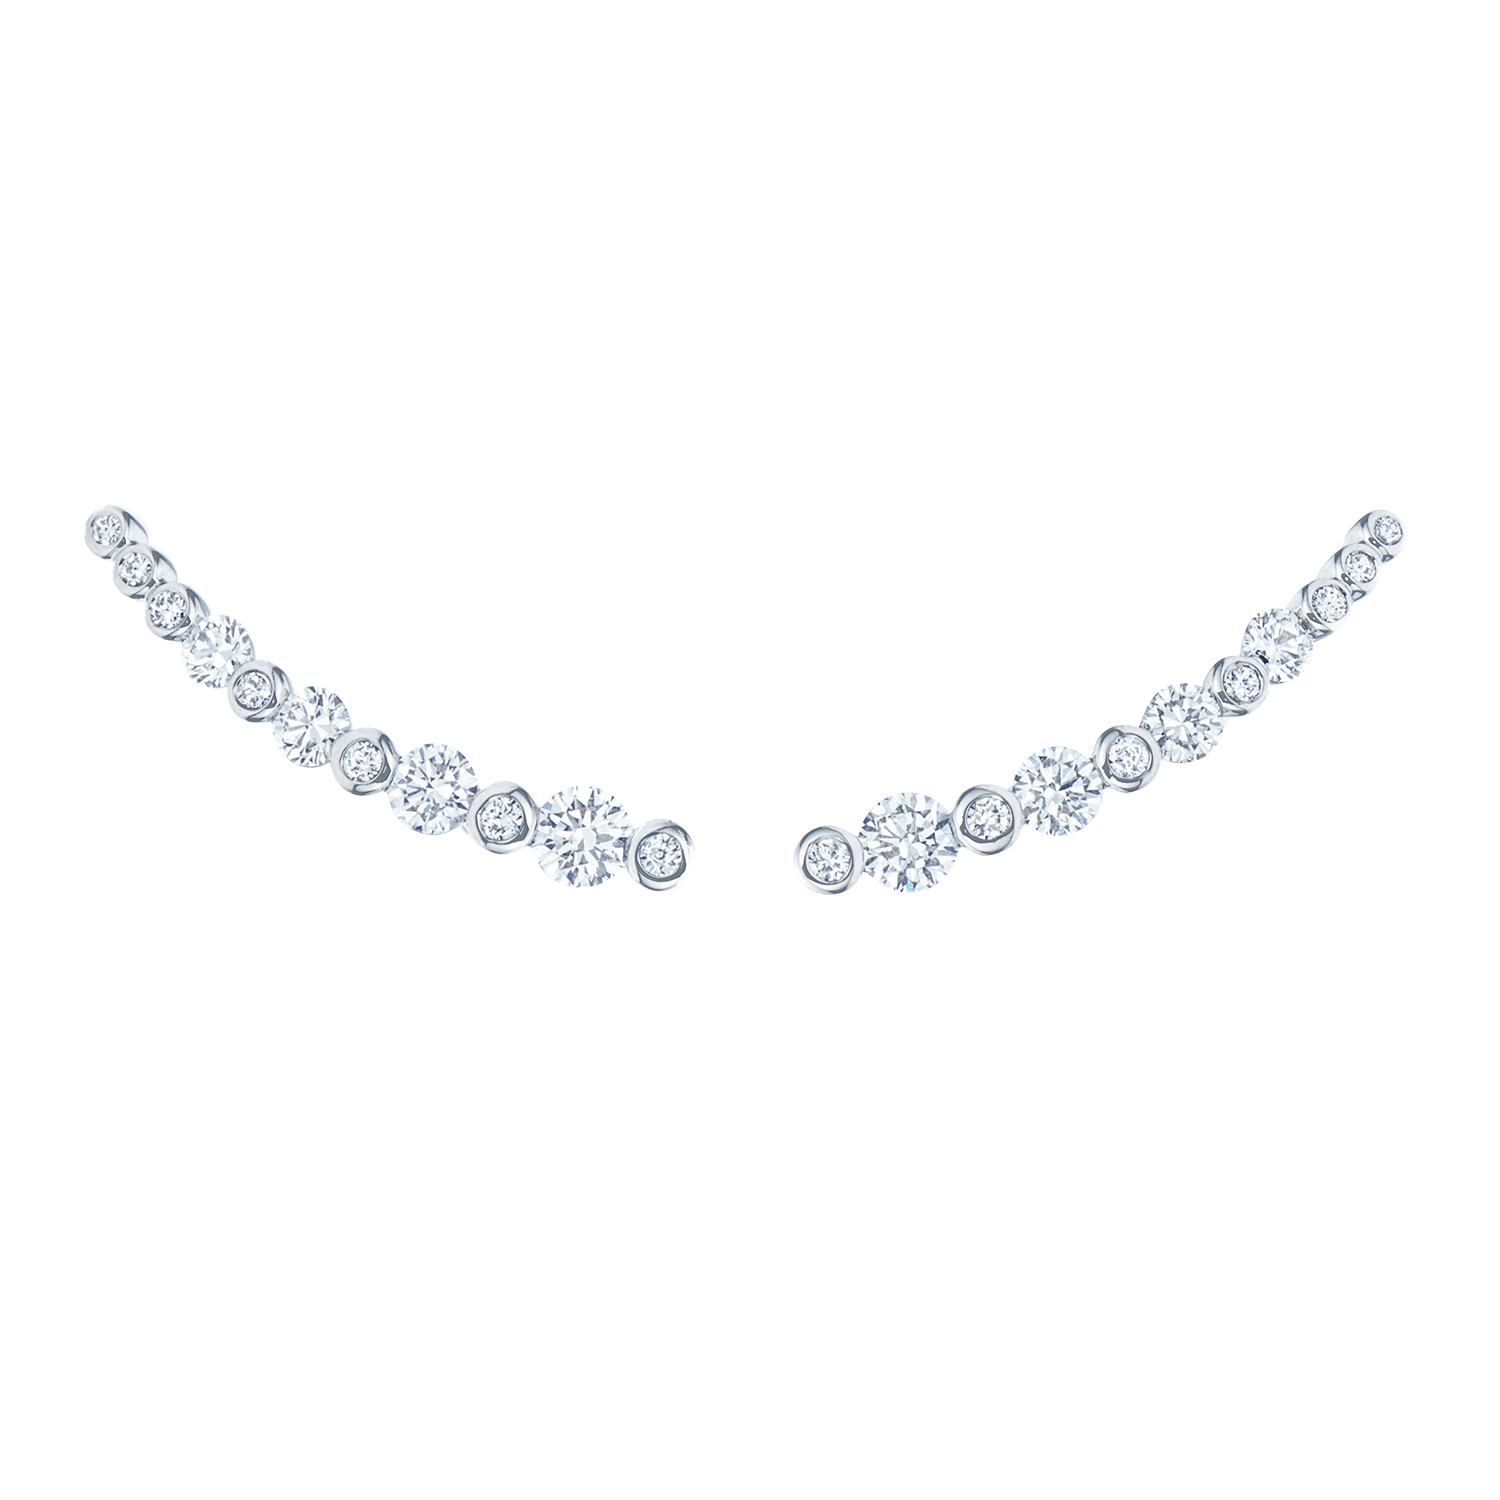 Kwiat Starry Night Diamond Earrings | Von Bargen's Jewelry